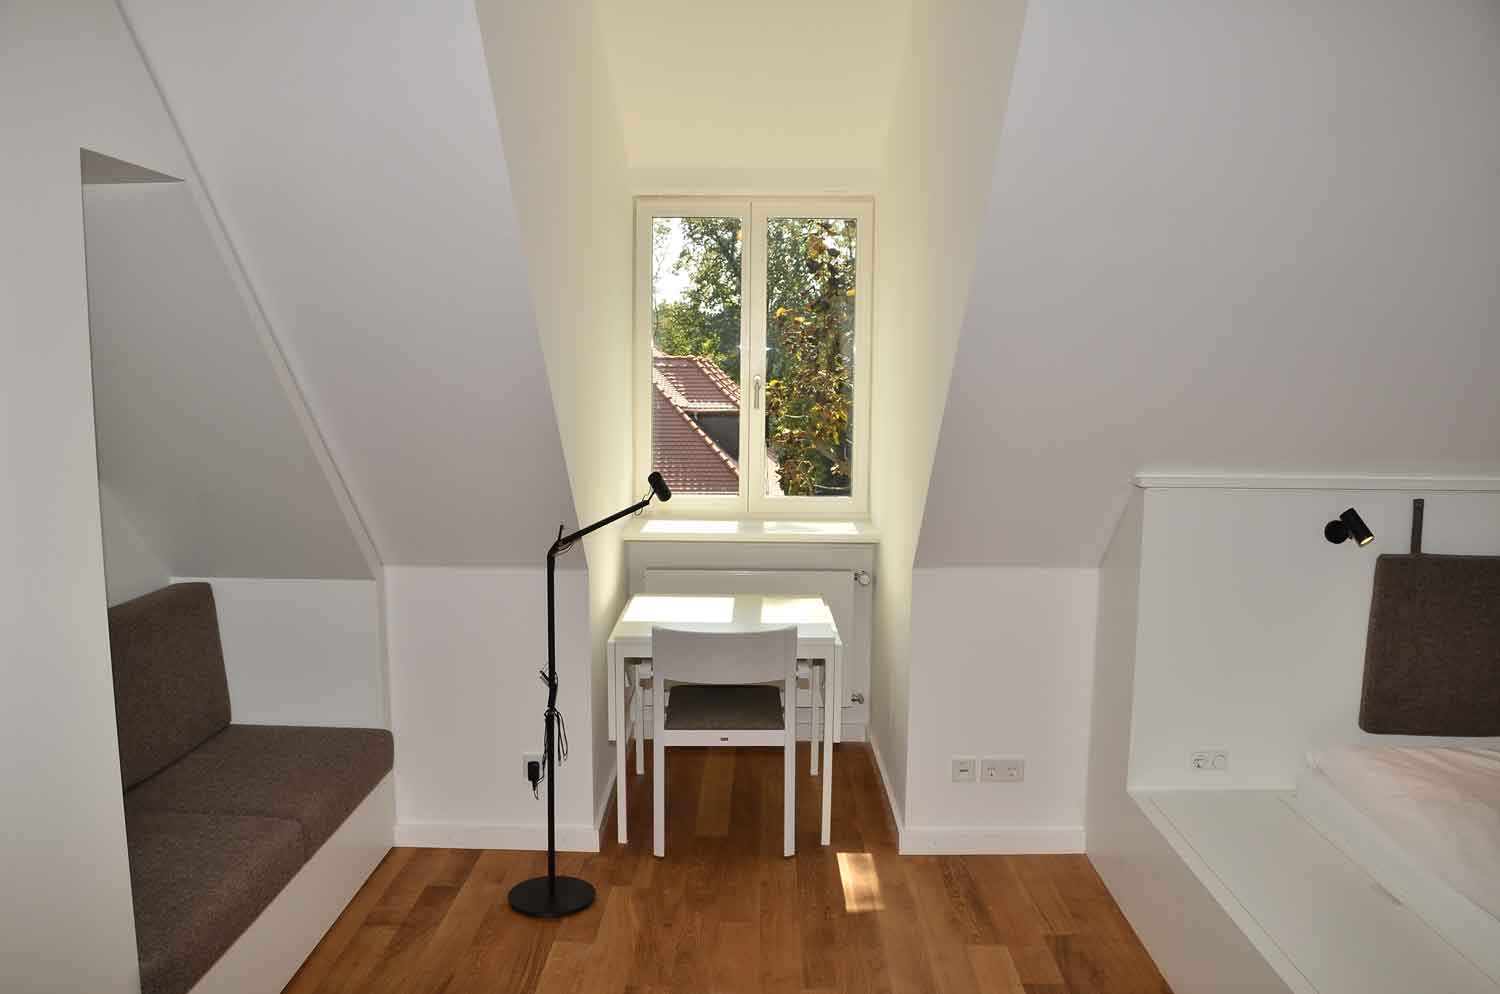 Foto, farbig, innen: Raum im Dachgeschoss mit weißen Wänden und Parkettfußboden, links eine Sitzbank mit schwarzem Bezug, in der Mitte eine Dachgaube mit kleinem Tisch und Stuhl, rechts eine Schlafgelegenheit.